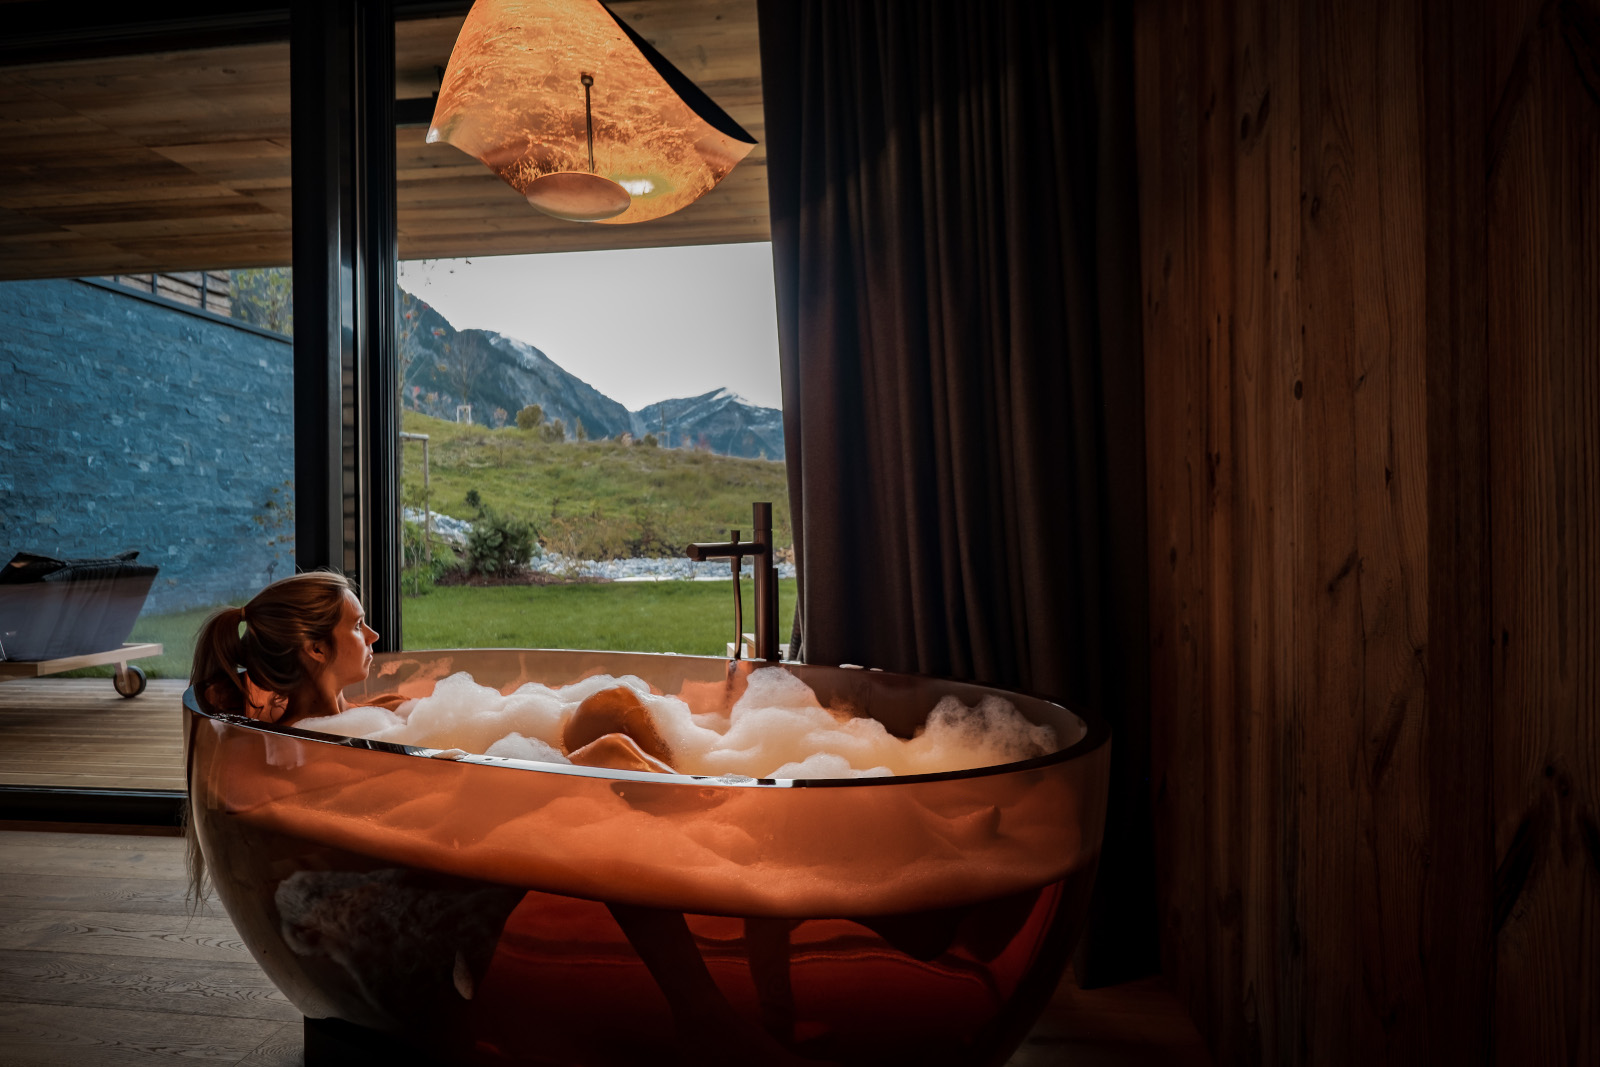 Sowohl die heimische Badewanne als auch die Panoramabadewannen im Tiroler Hotel Jungbrunn, Tannheimer Tal laden zu entspannten Momenten ein Bildnachweis: Hotel Jungbrunn – Der Gutzeitort, Tannheim/Tirol